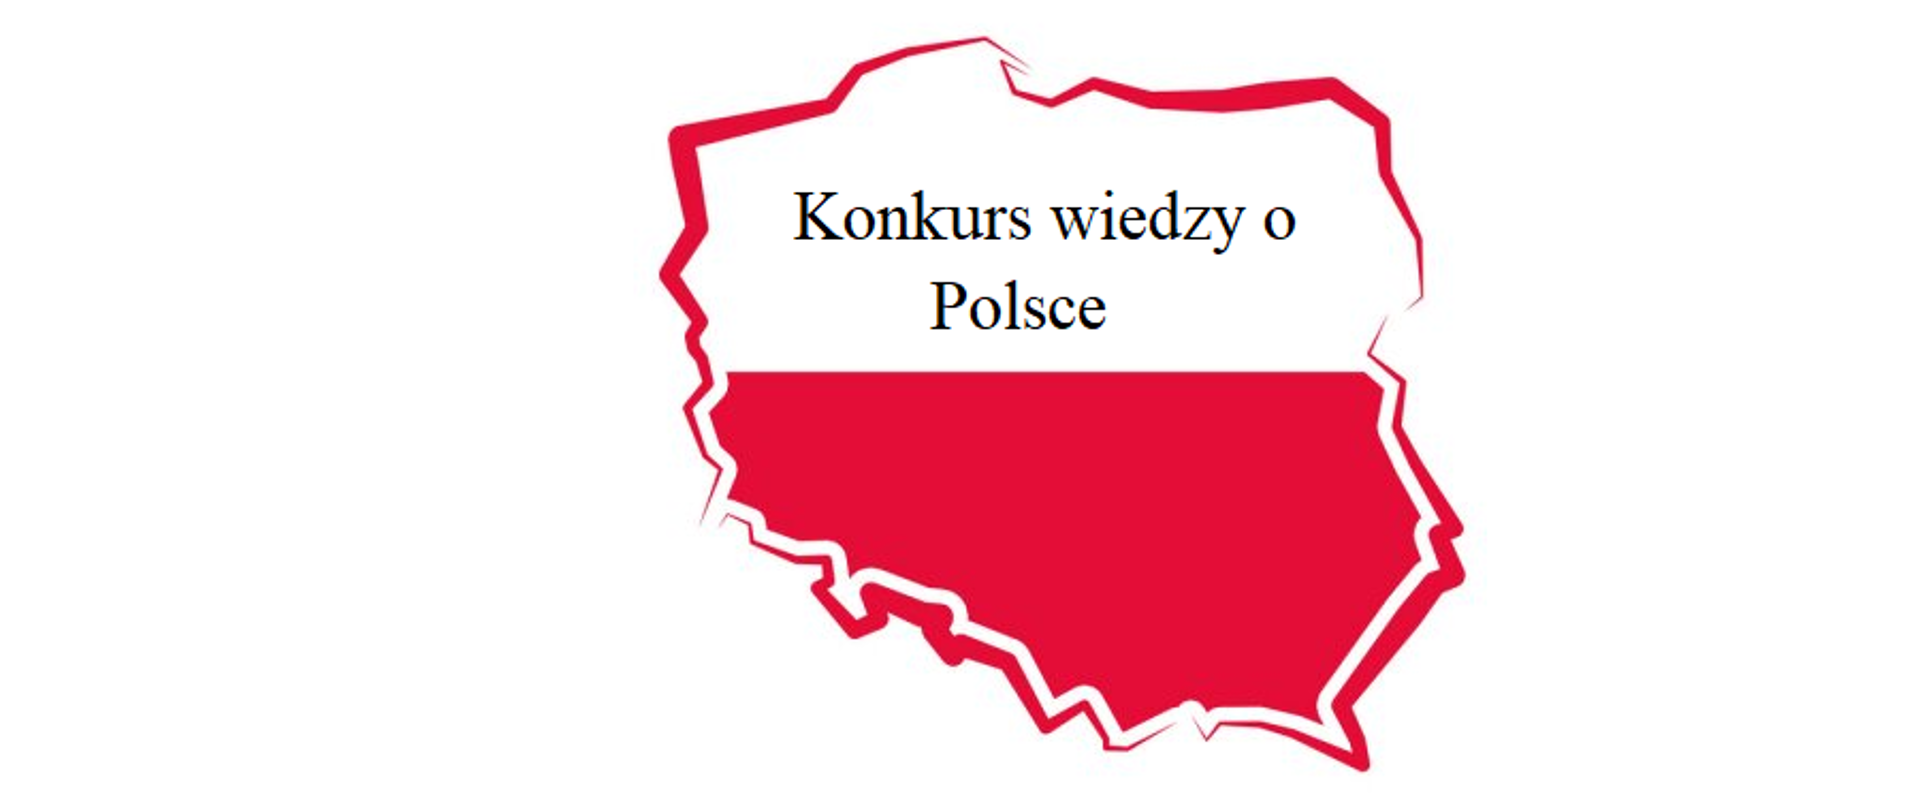 Konkurs wiedzy o Polsce